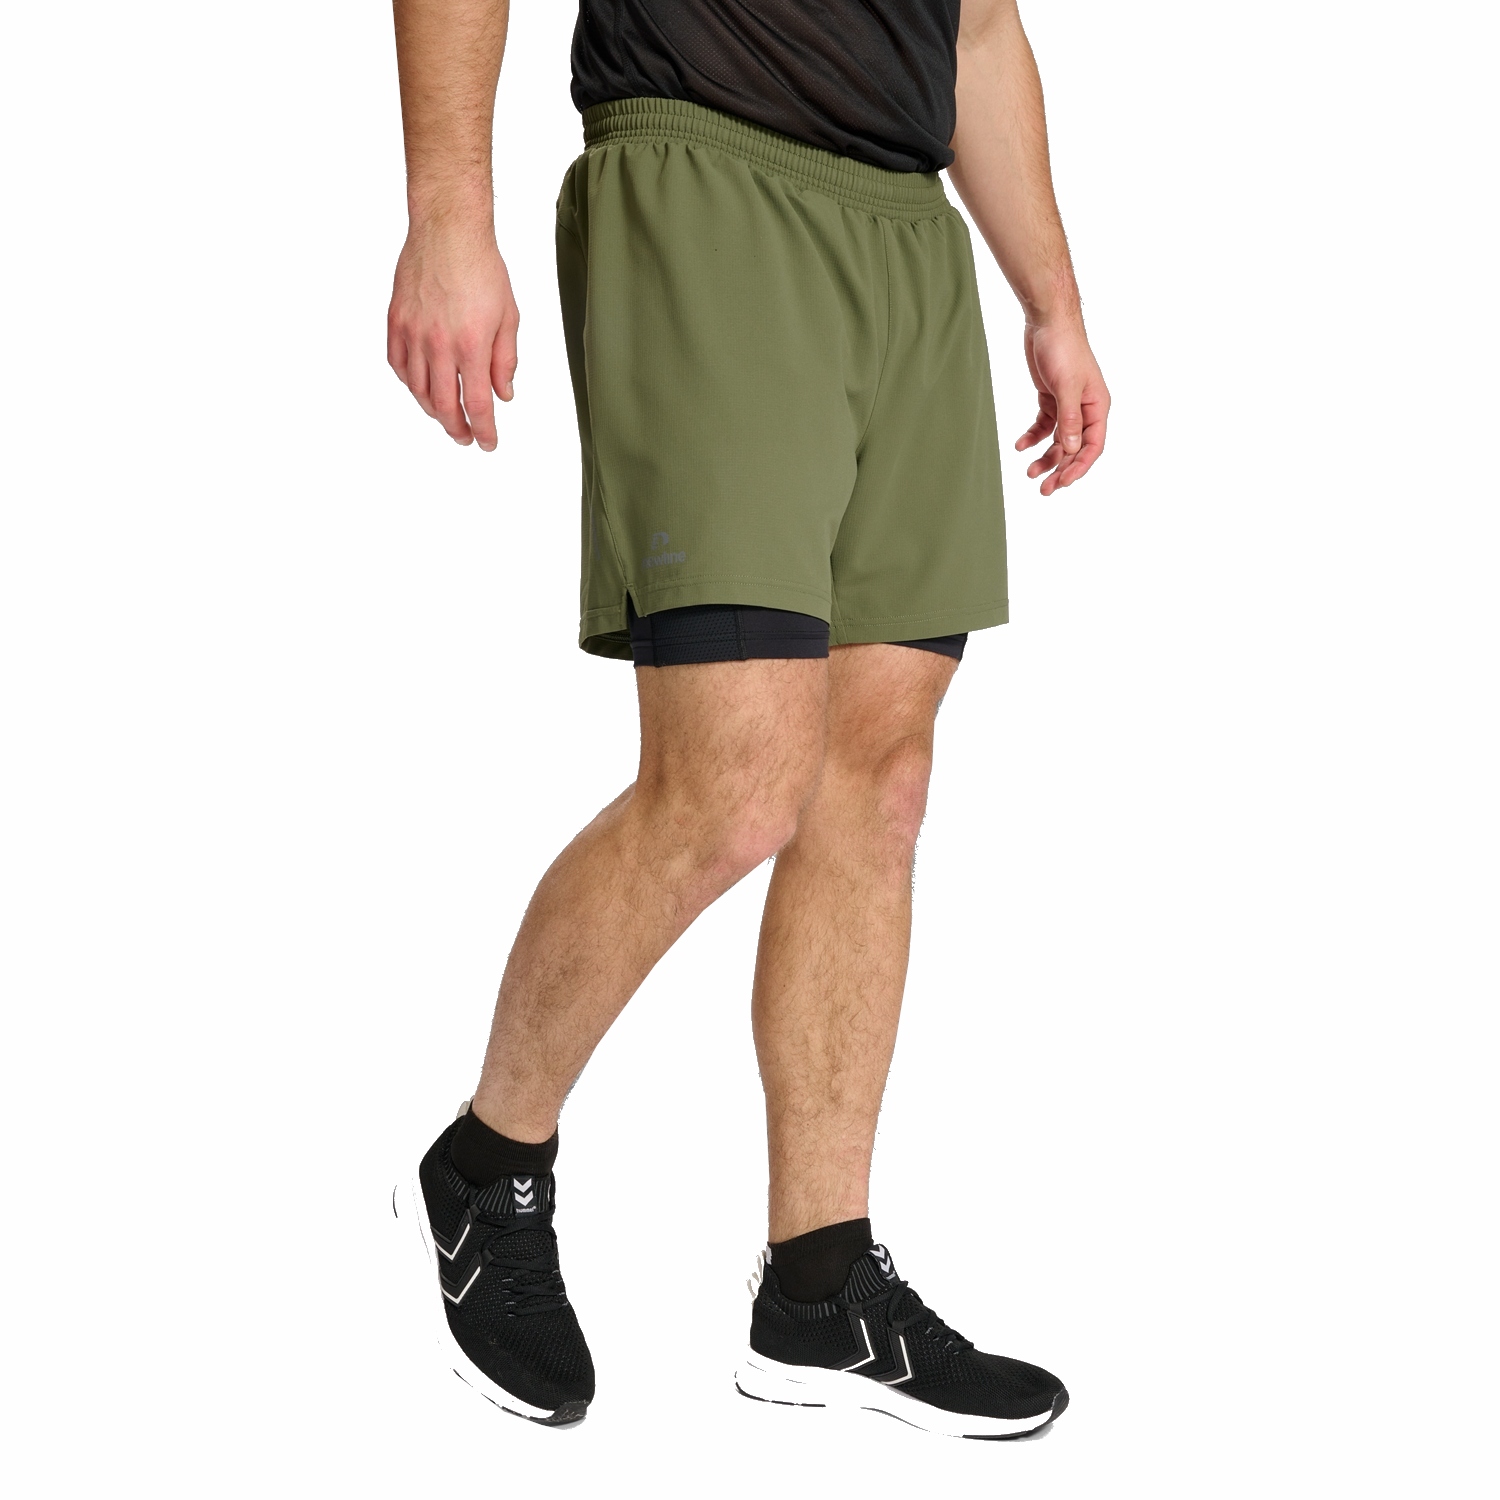 Produktbild von Newline Dallas 2in1 Shorts Herren - four leaf clover